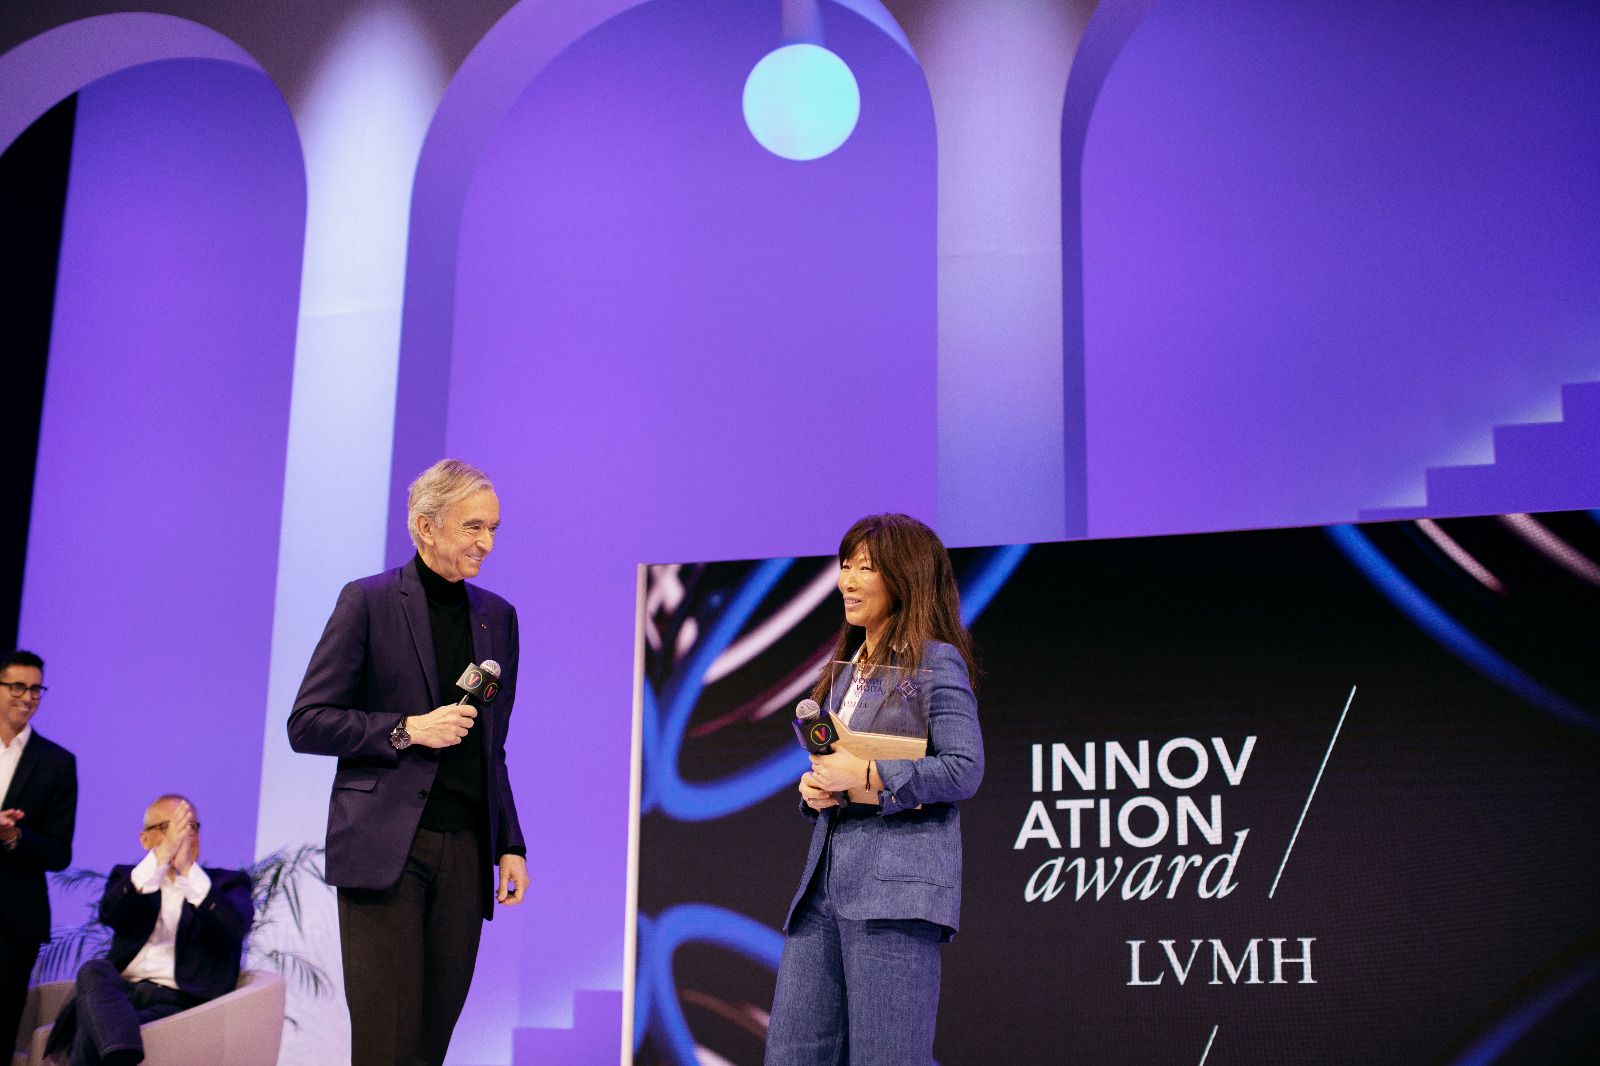 Viva Technology 2018: spotlight on innovations from LVMH Maisons - LVMH